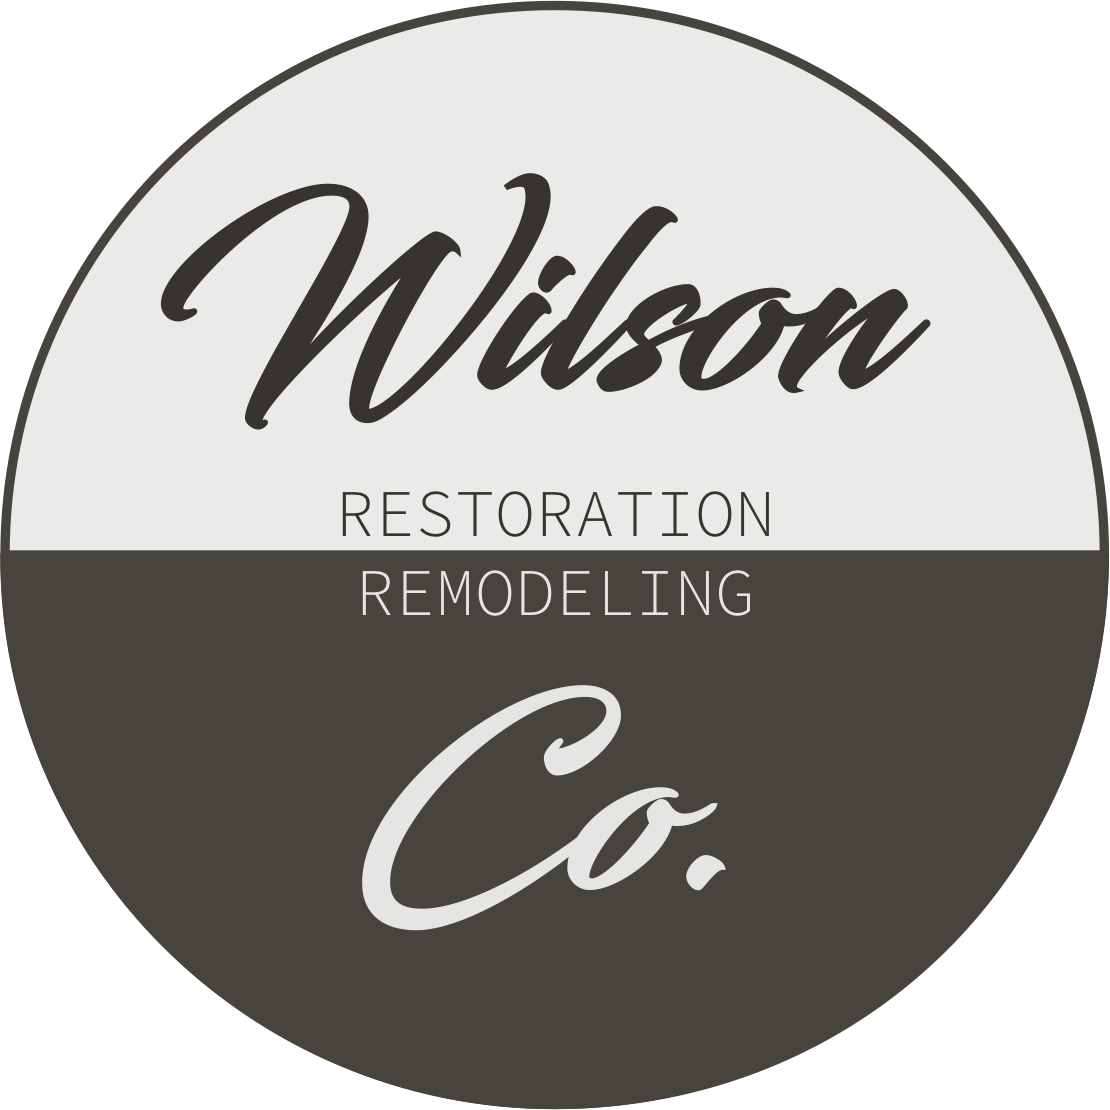 Wilson Co.